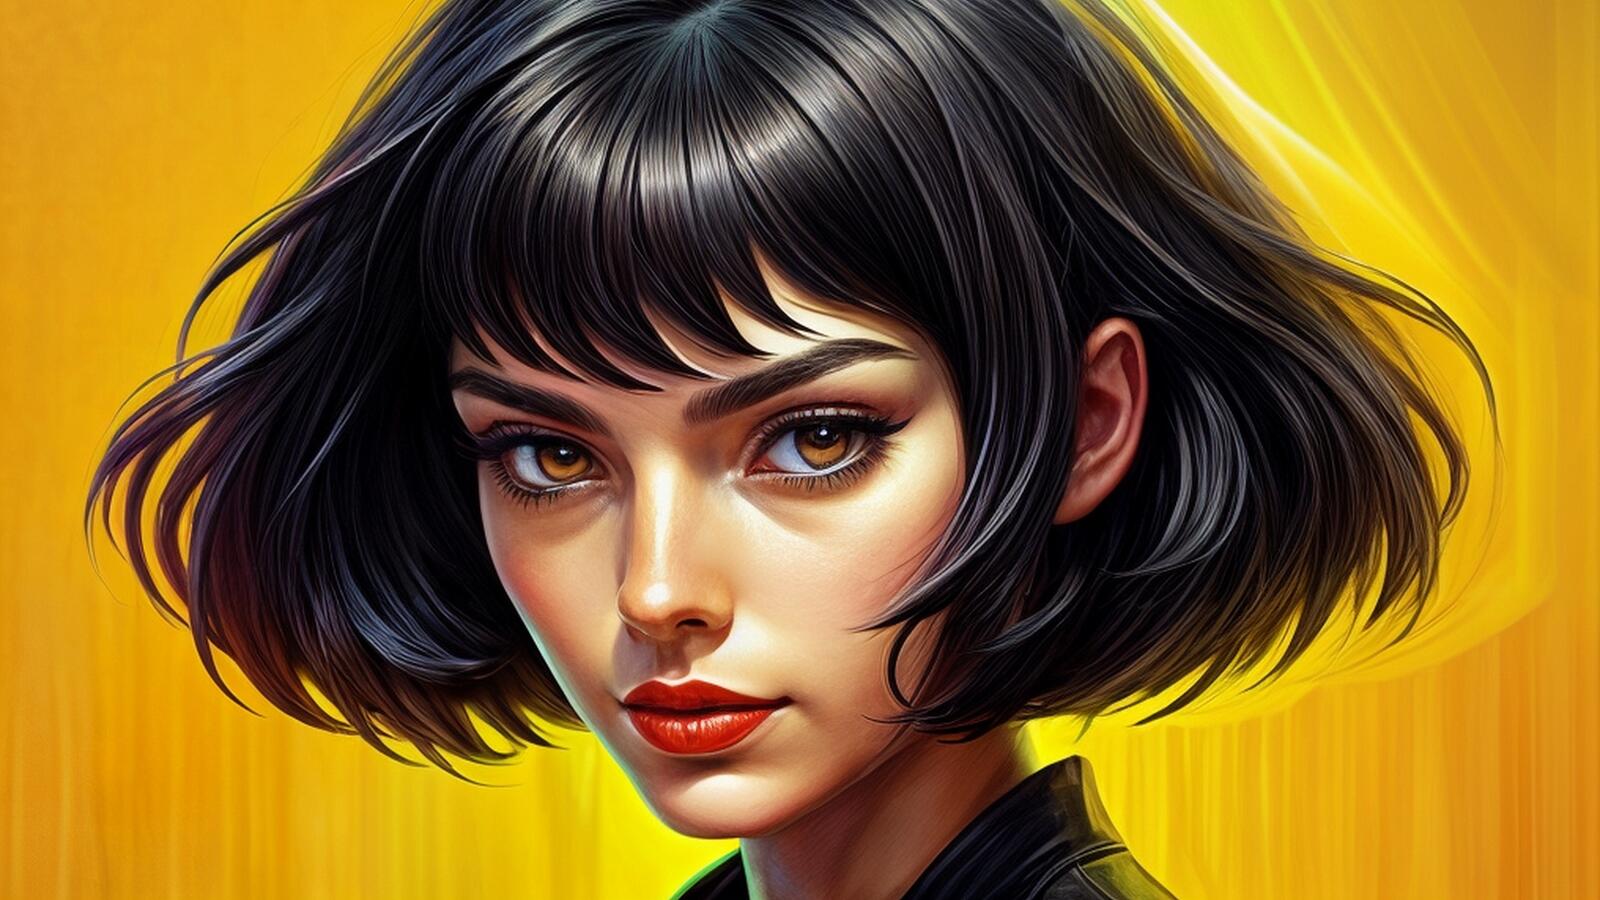 Бесплатное фото Портрет девушки брюнетки с короткими волосами на желтом фоне